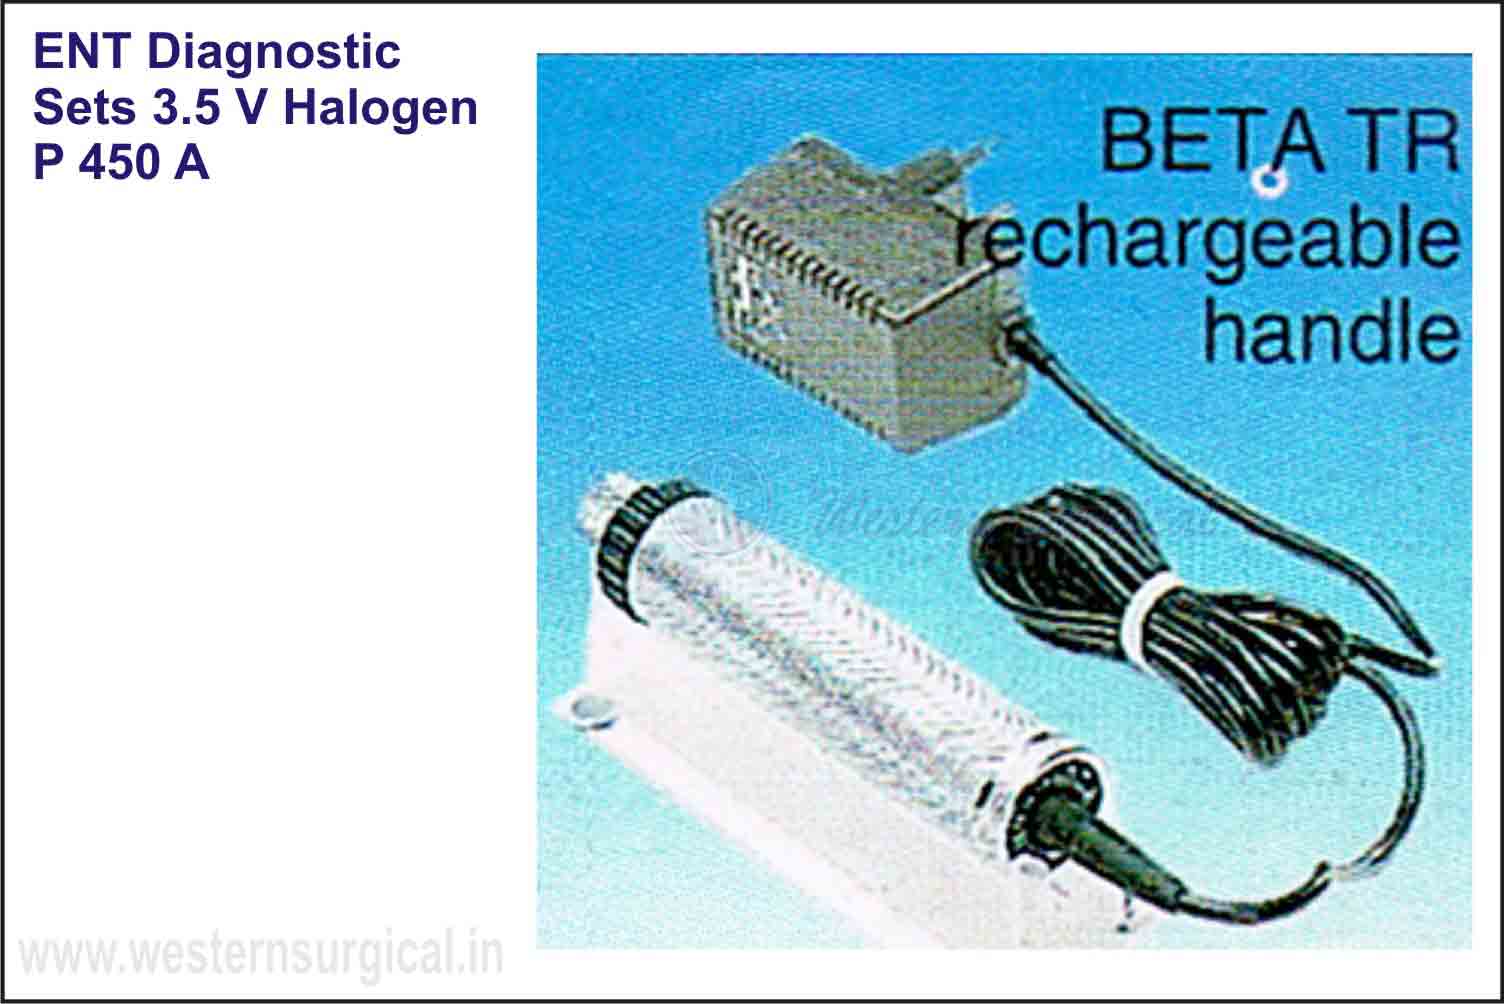 ENT DIAGNOSTIC SETS(3.5 V halogen)